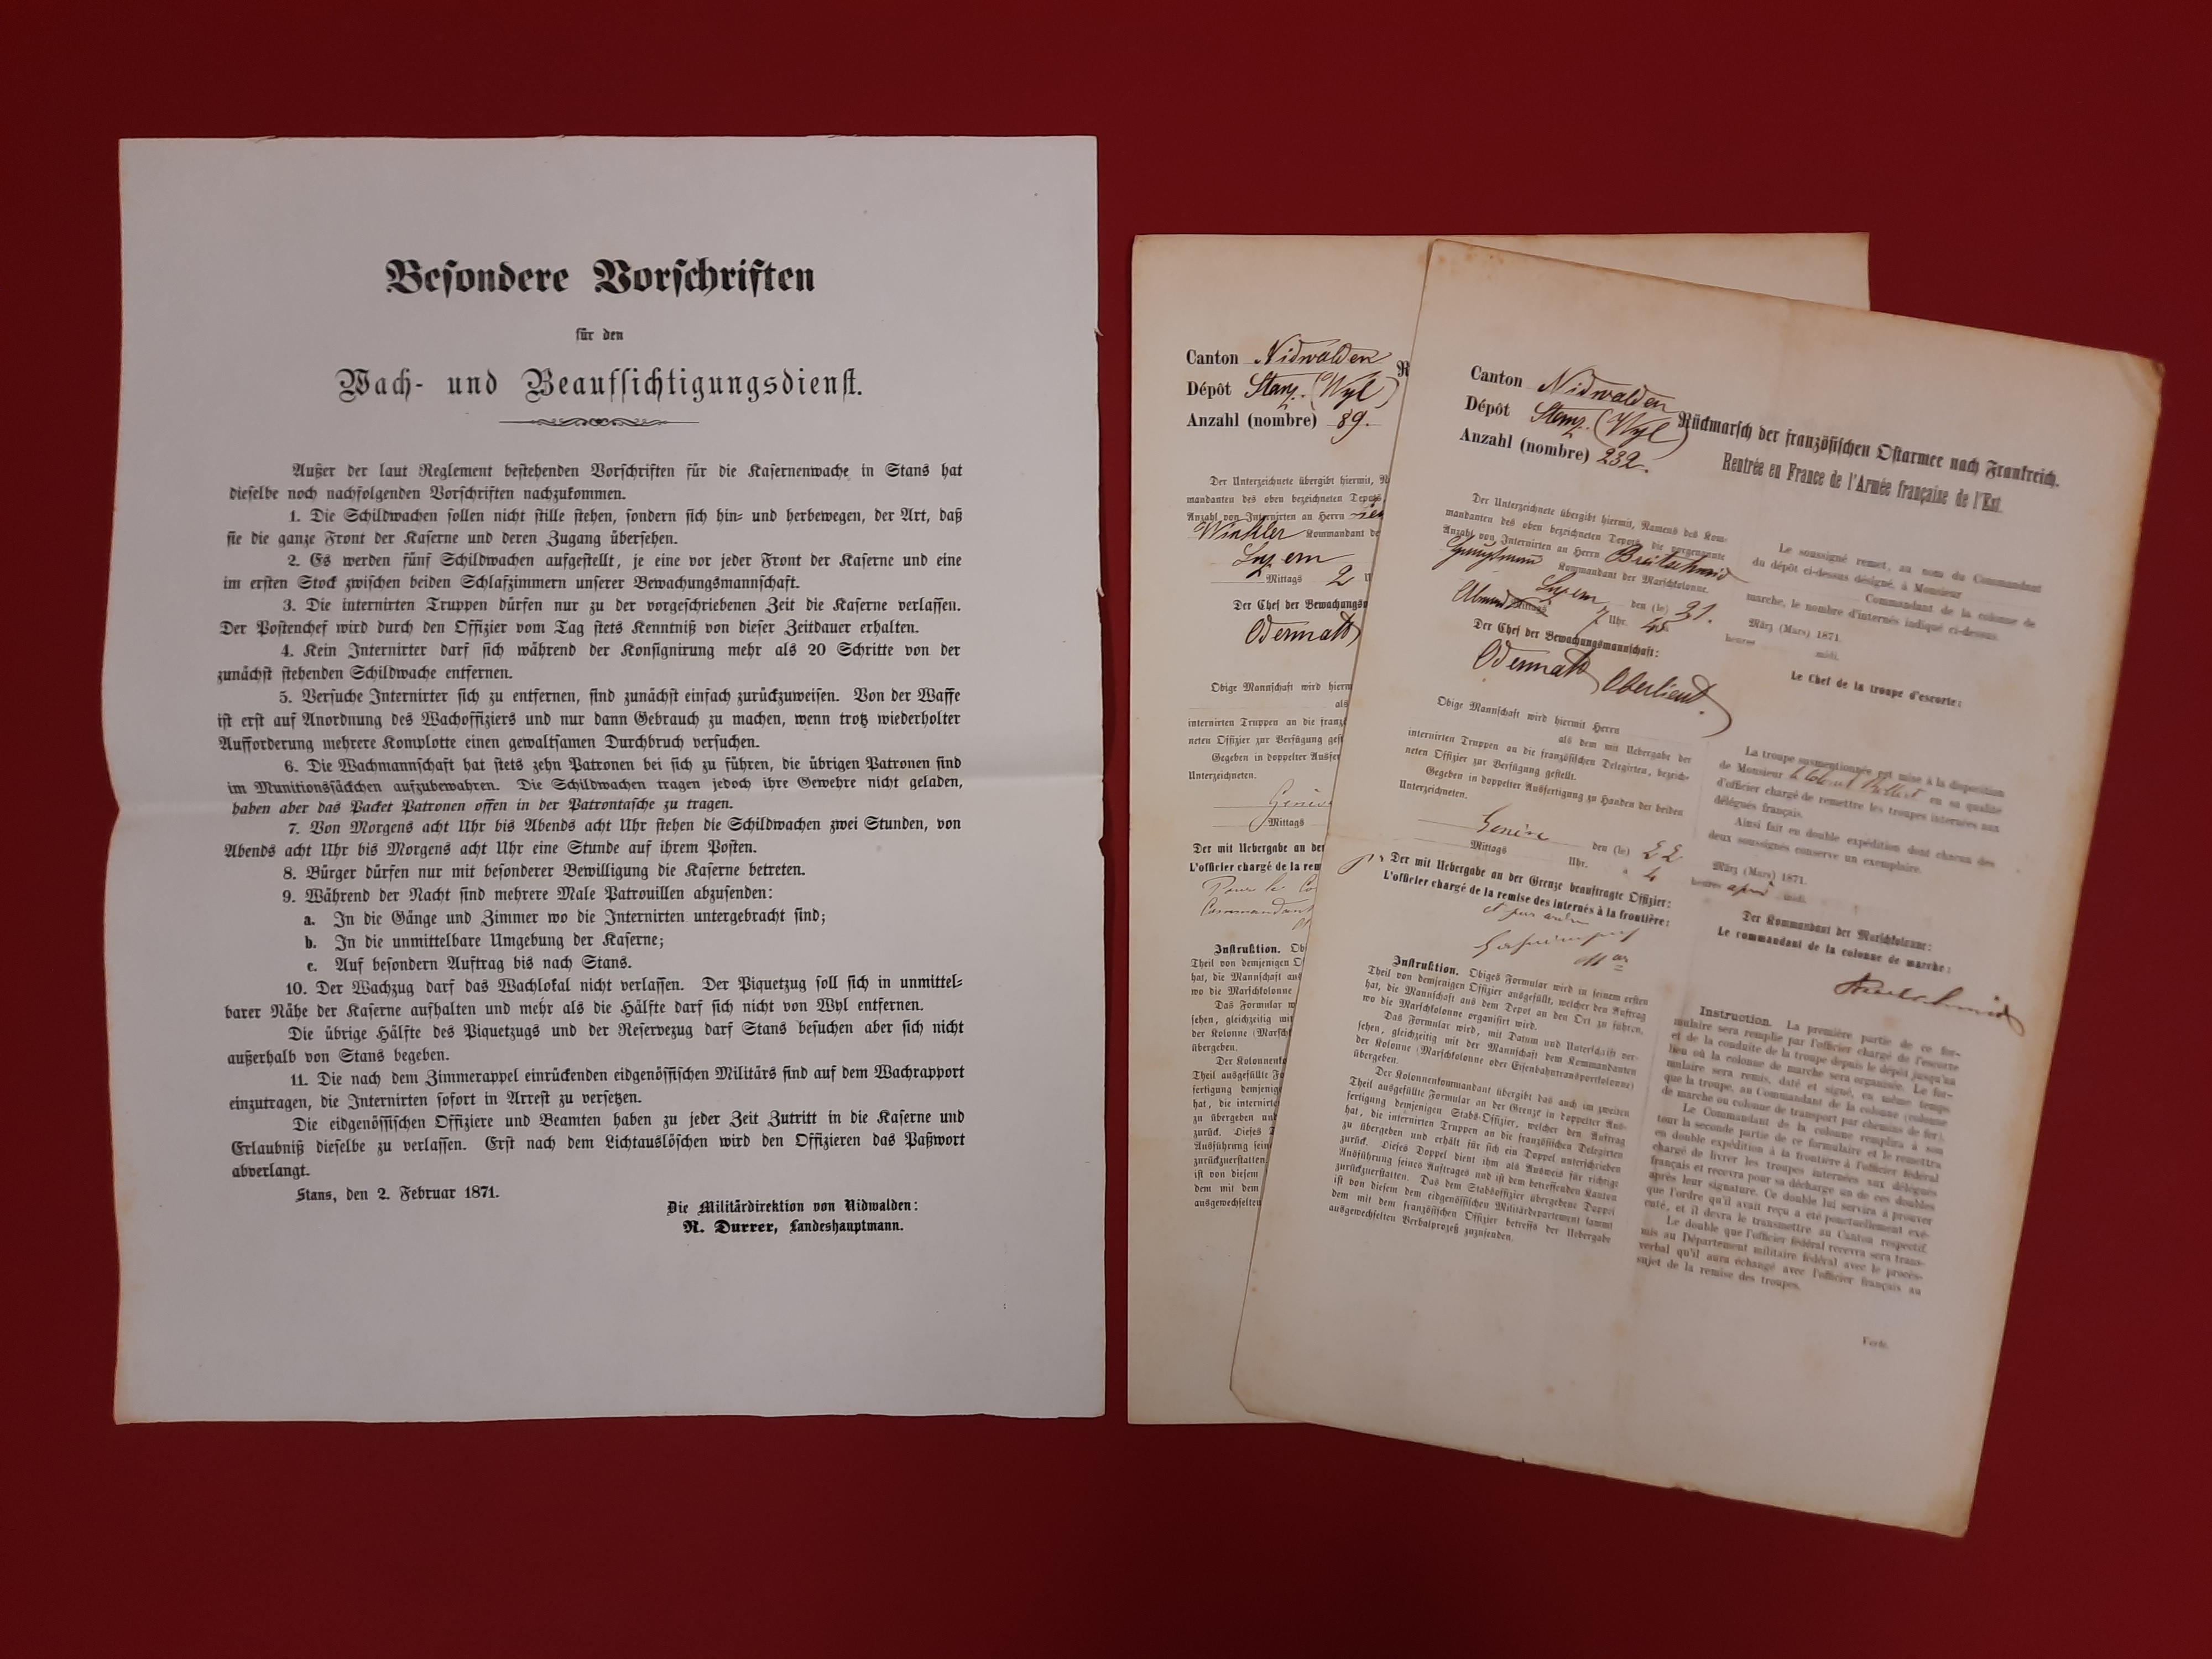 Diese Dokumente zeugen vom Aufenthalt französischer Soldaten der Bourbaki-Armee in der Kaserne Wil. Dort wurden sie im Februar 1871 interniert und verpflegt, bis sie im März 1871 in ihre Heimat zurückgeführt werden konnten